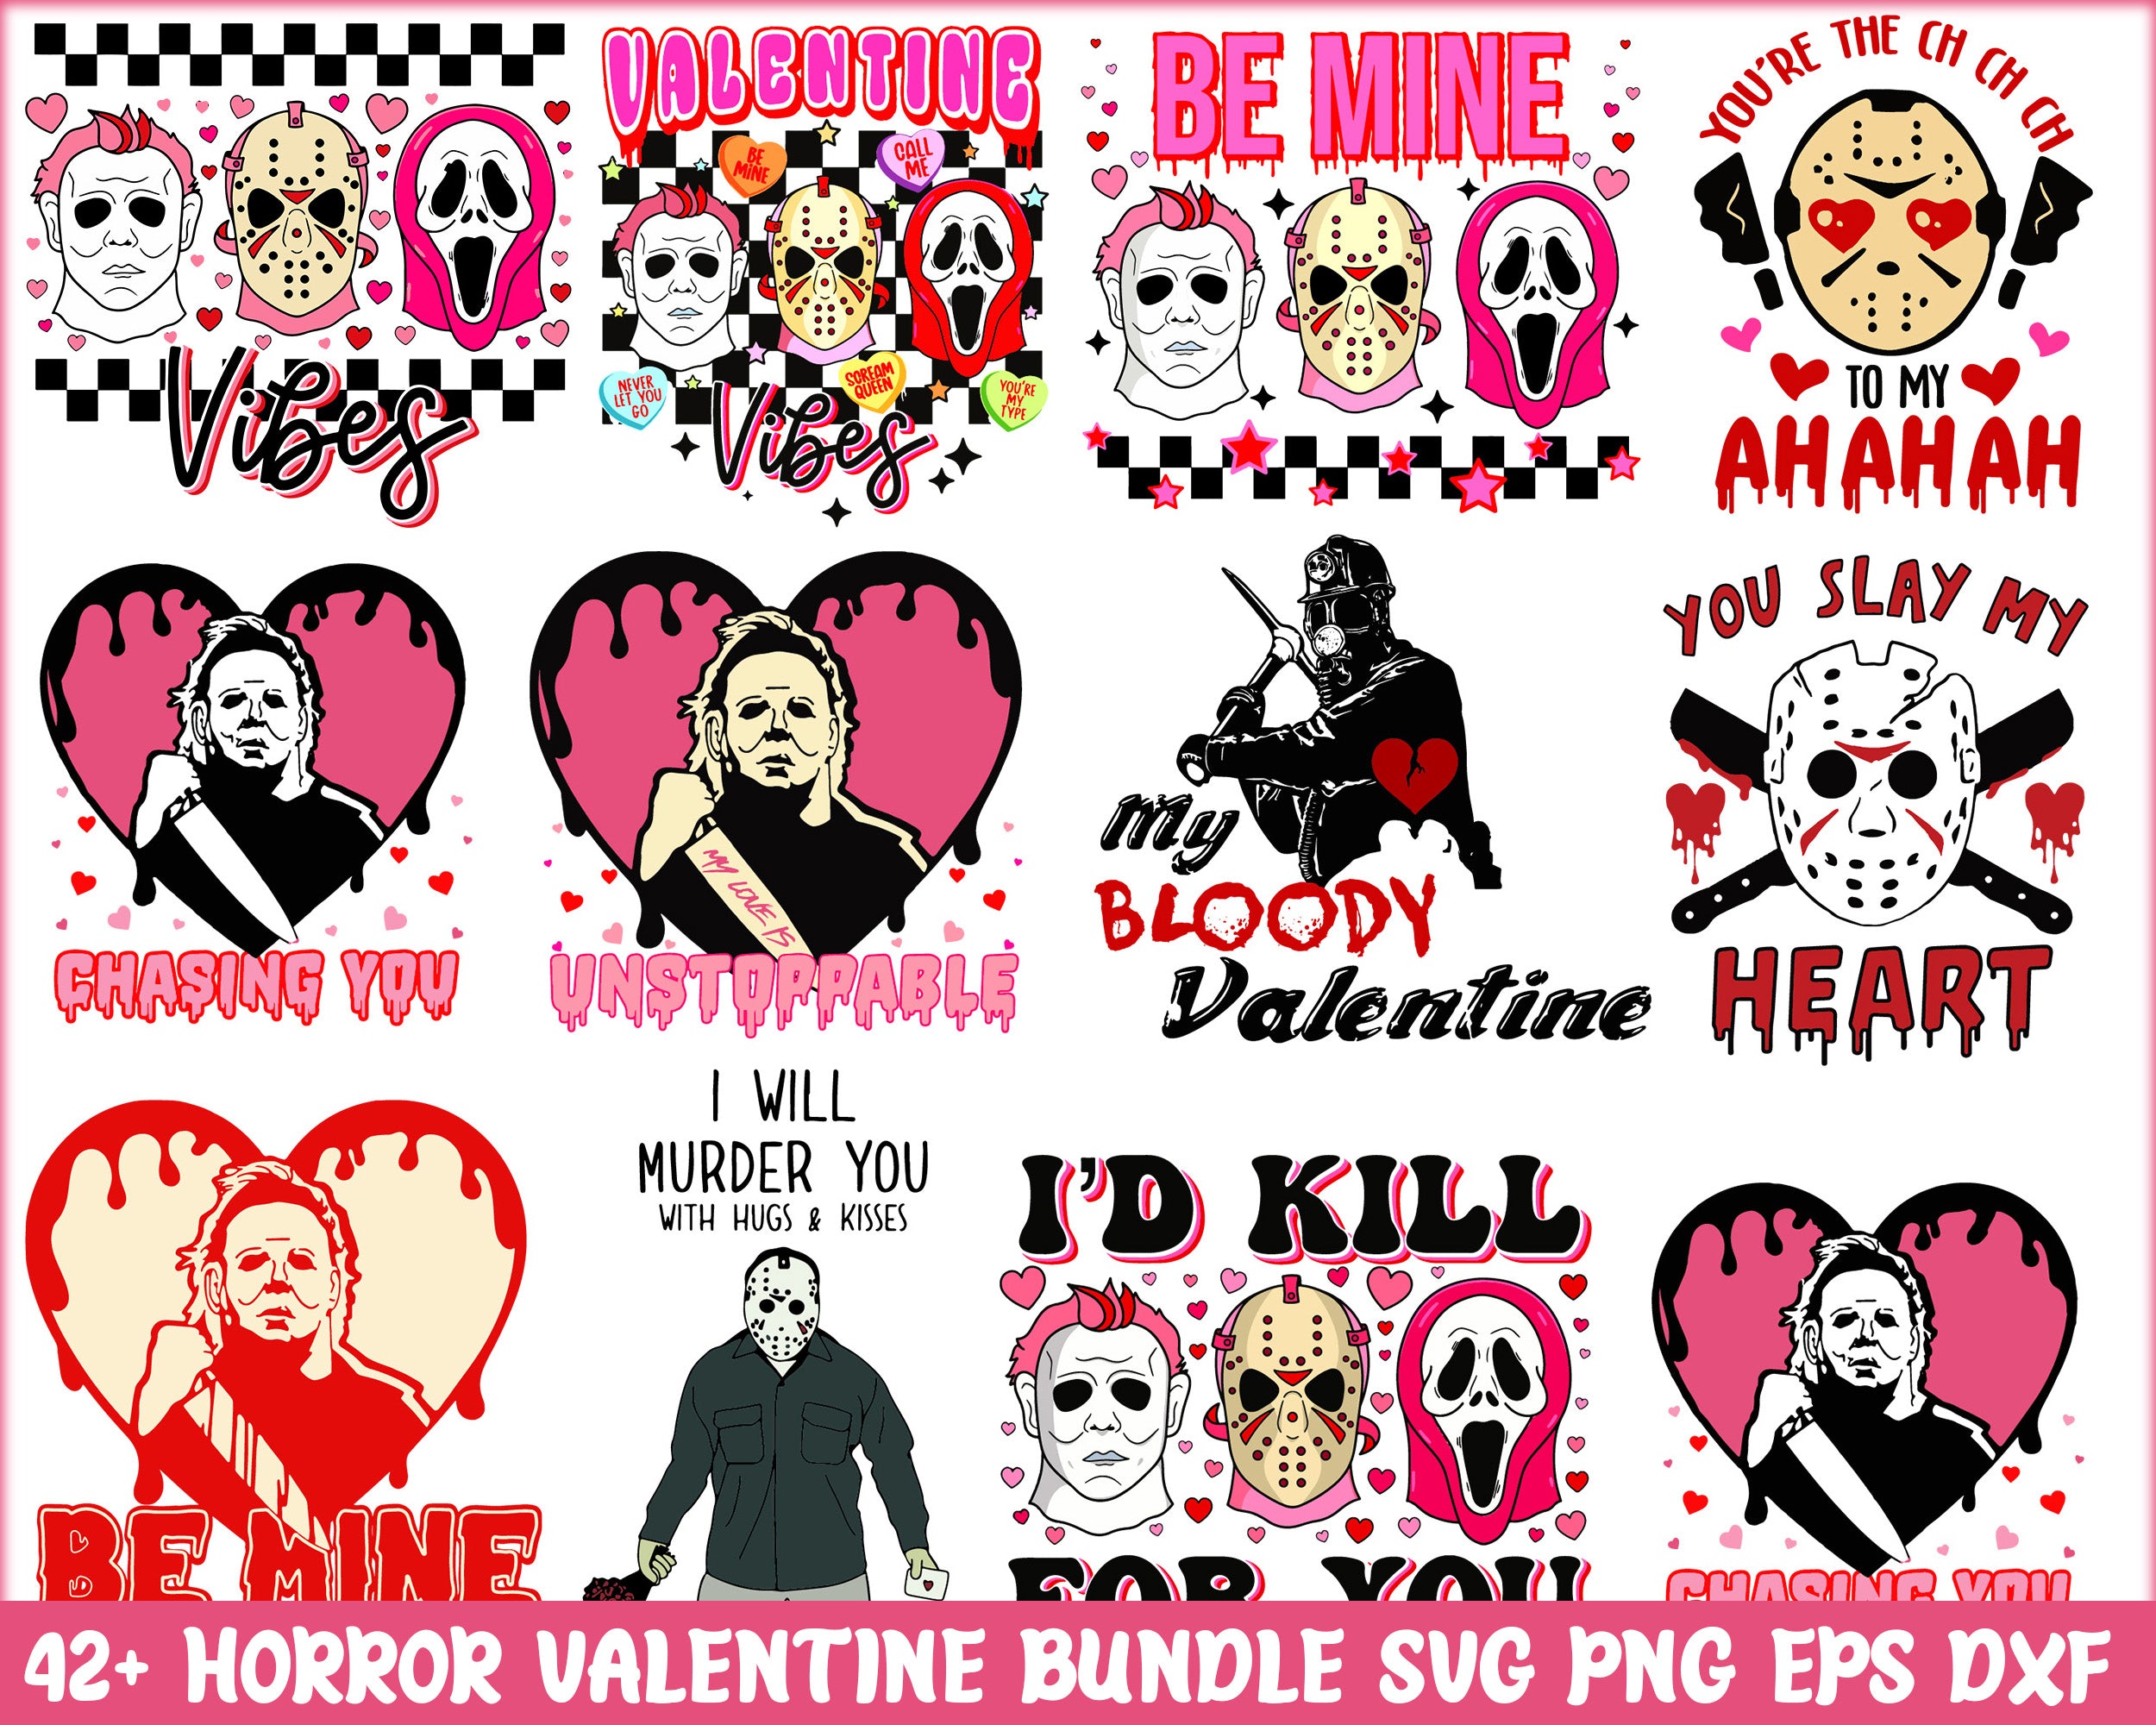 42+ Horror Valentine bundle, Valentine's day SVG, Valentine svg png eps dxf files, Design Digital Download